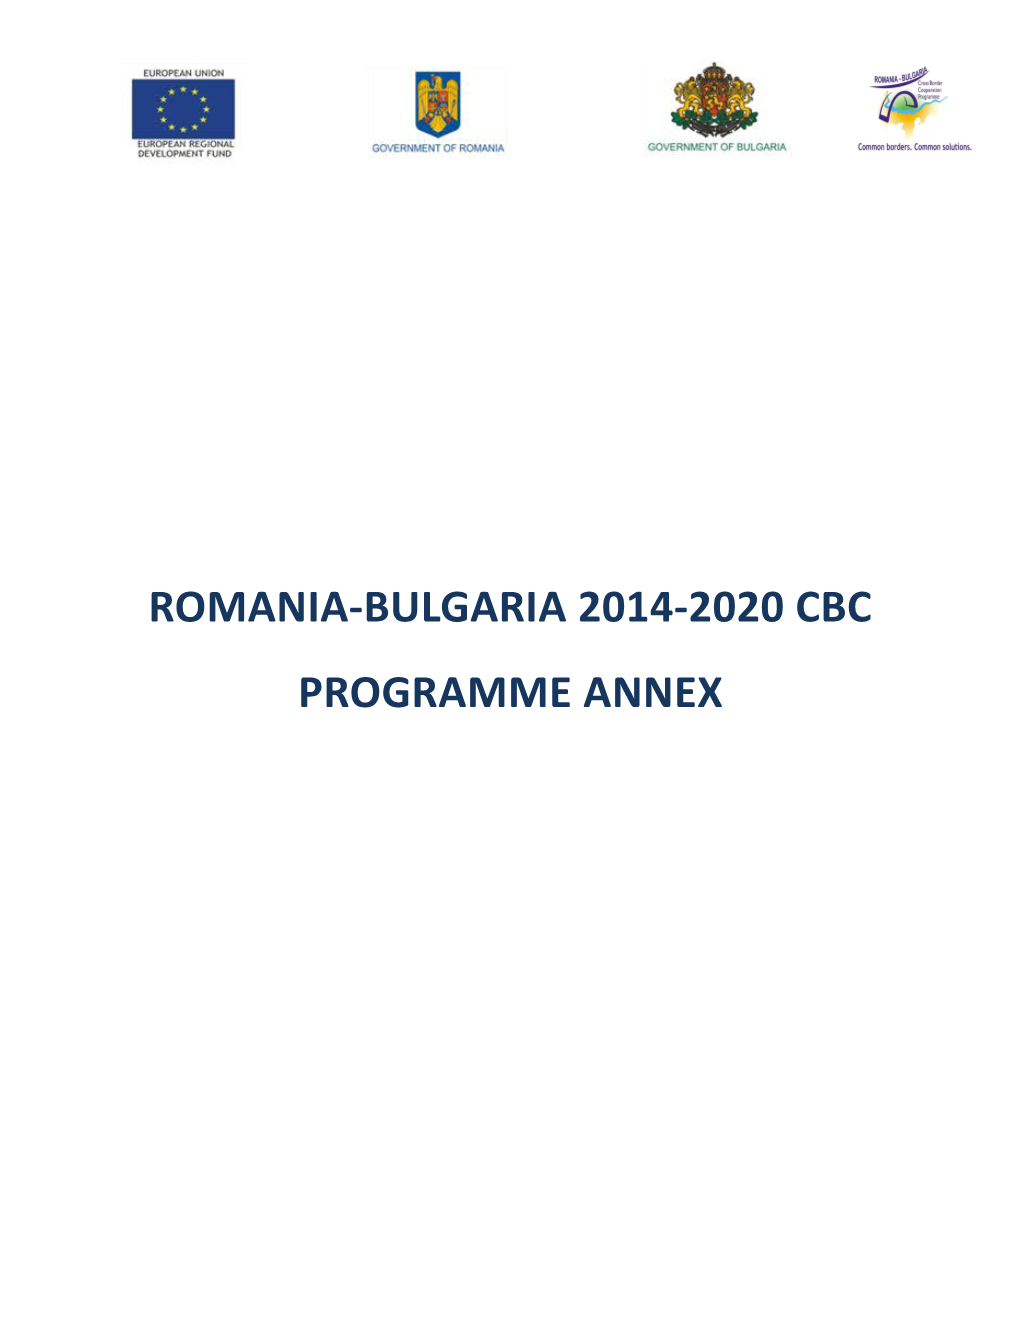 Romania-Bulgaria 2014-2020 Cbc Programme Annex